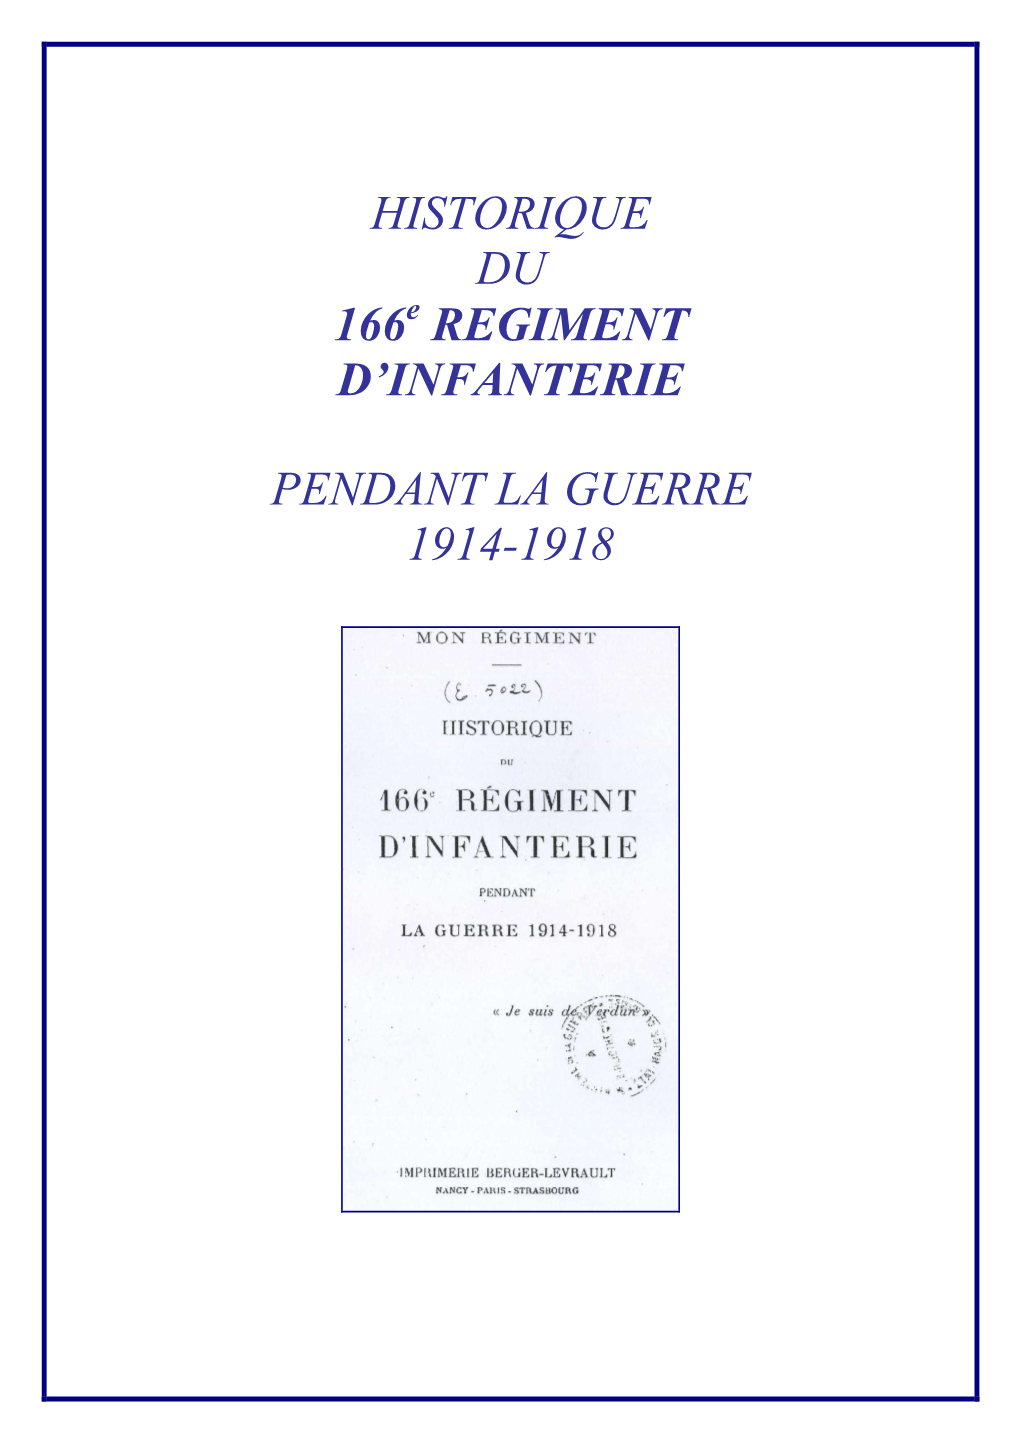 Regiment D'infanterie Pendant La Guerre 1914-1918